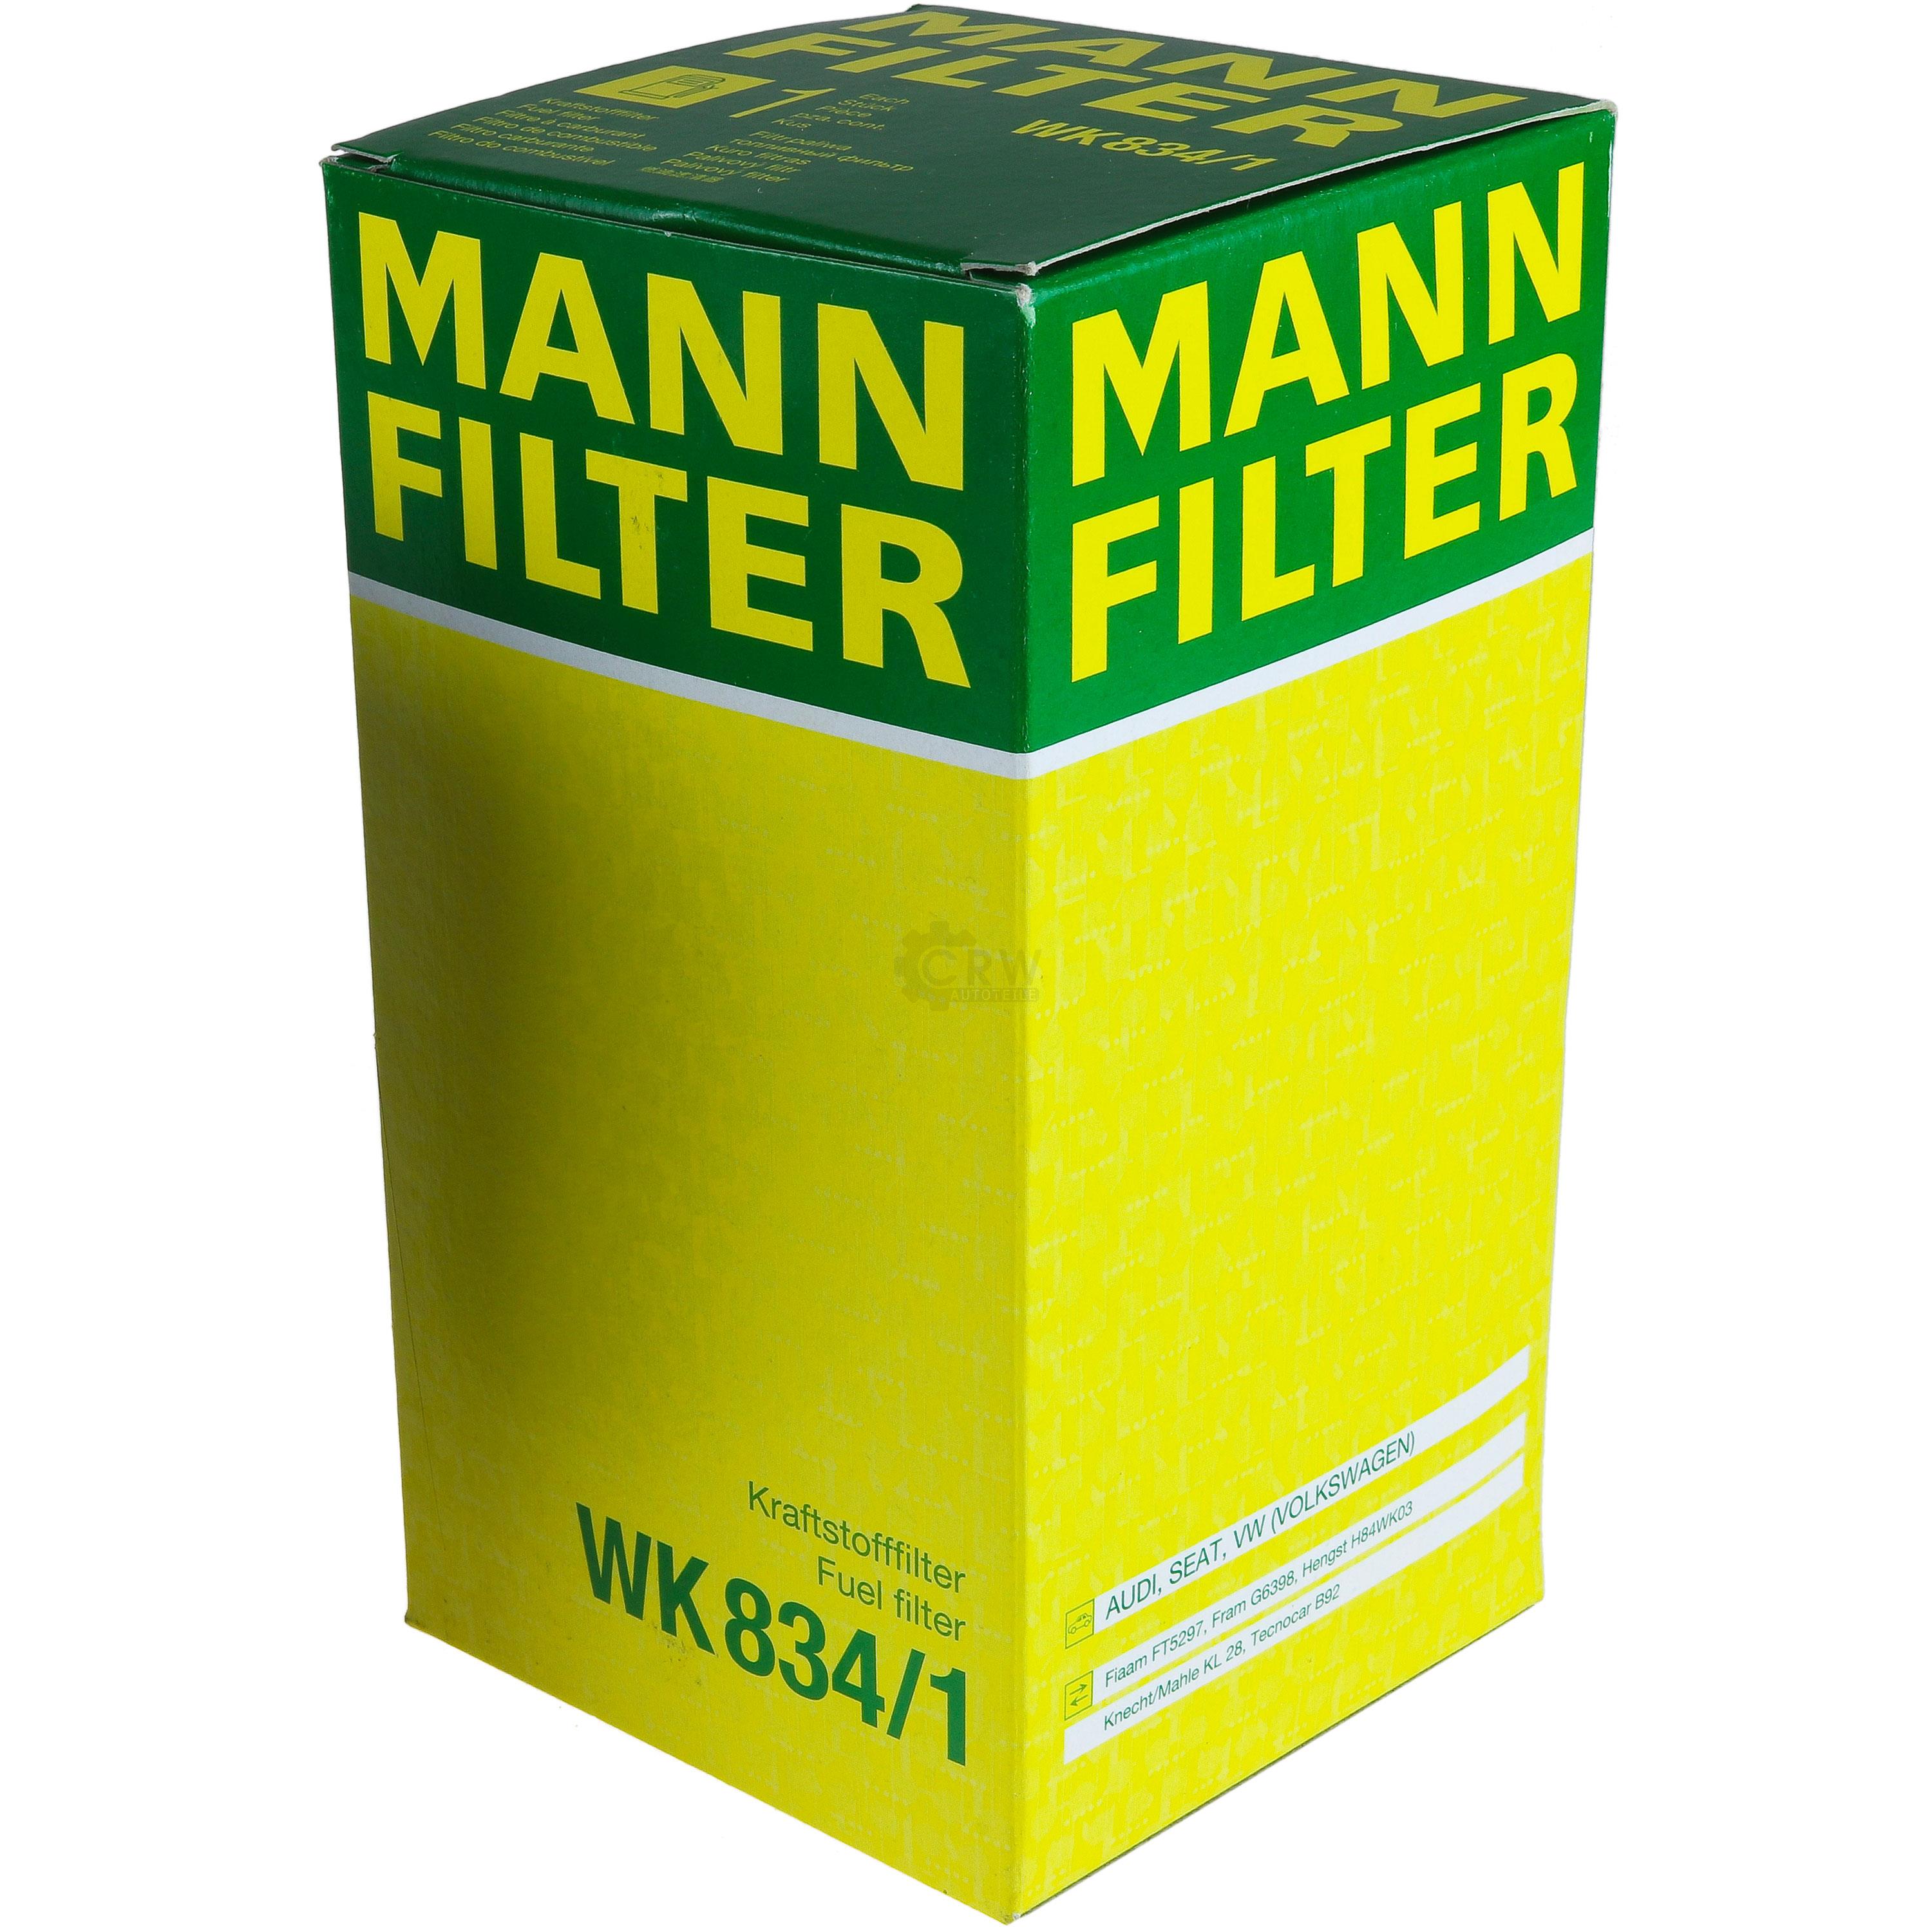 MANN-FILTER Kraftstofffilter WK 834/1 Fuel Filter